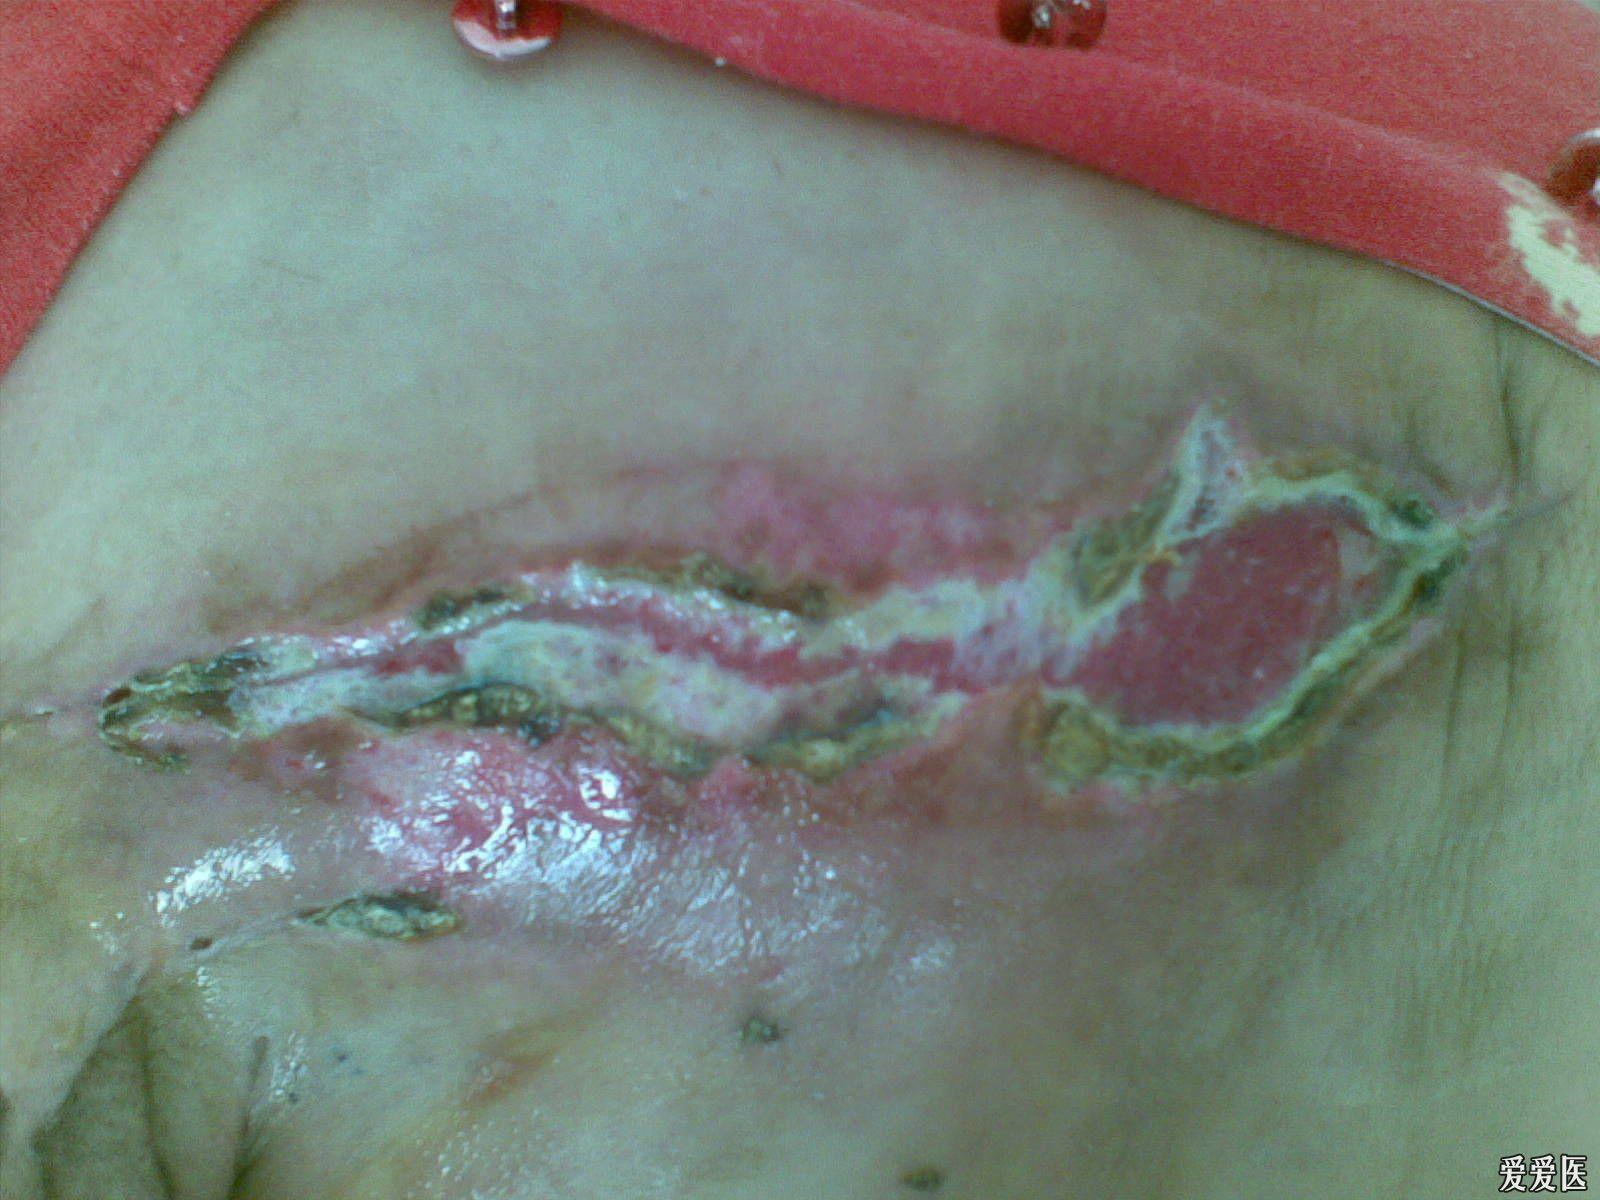 乳房棒棒糖切口疤痕图片